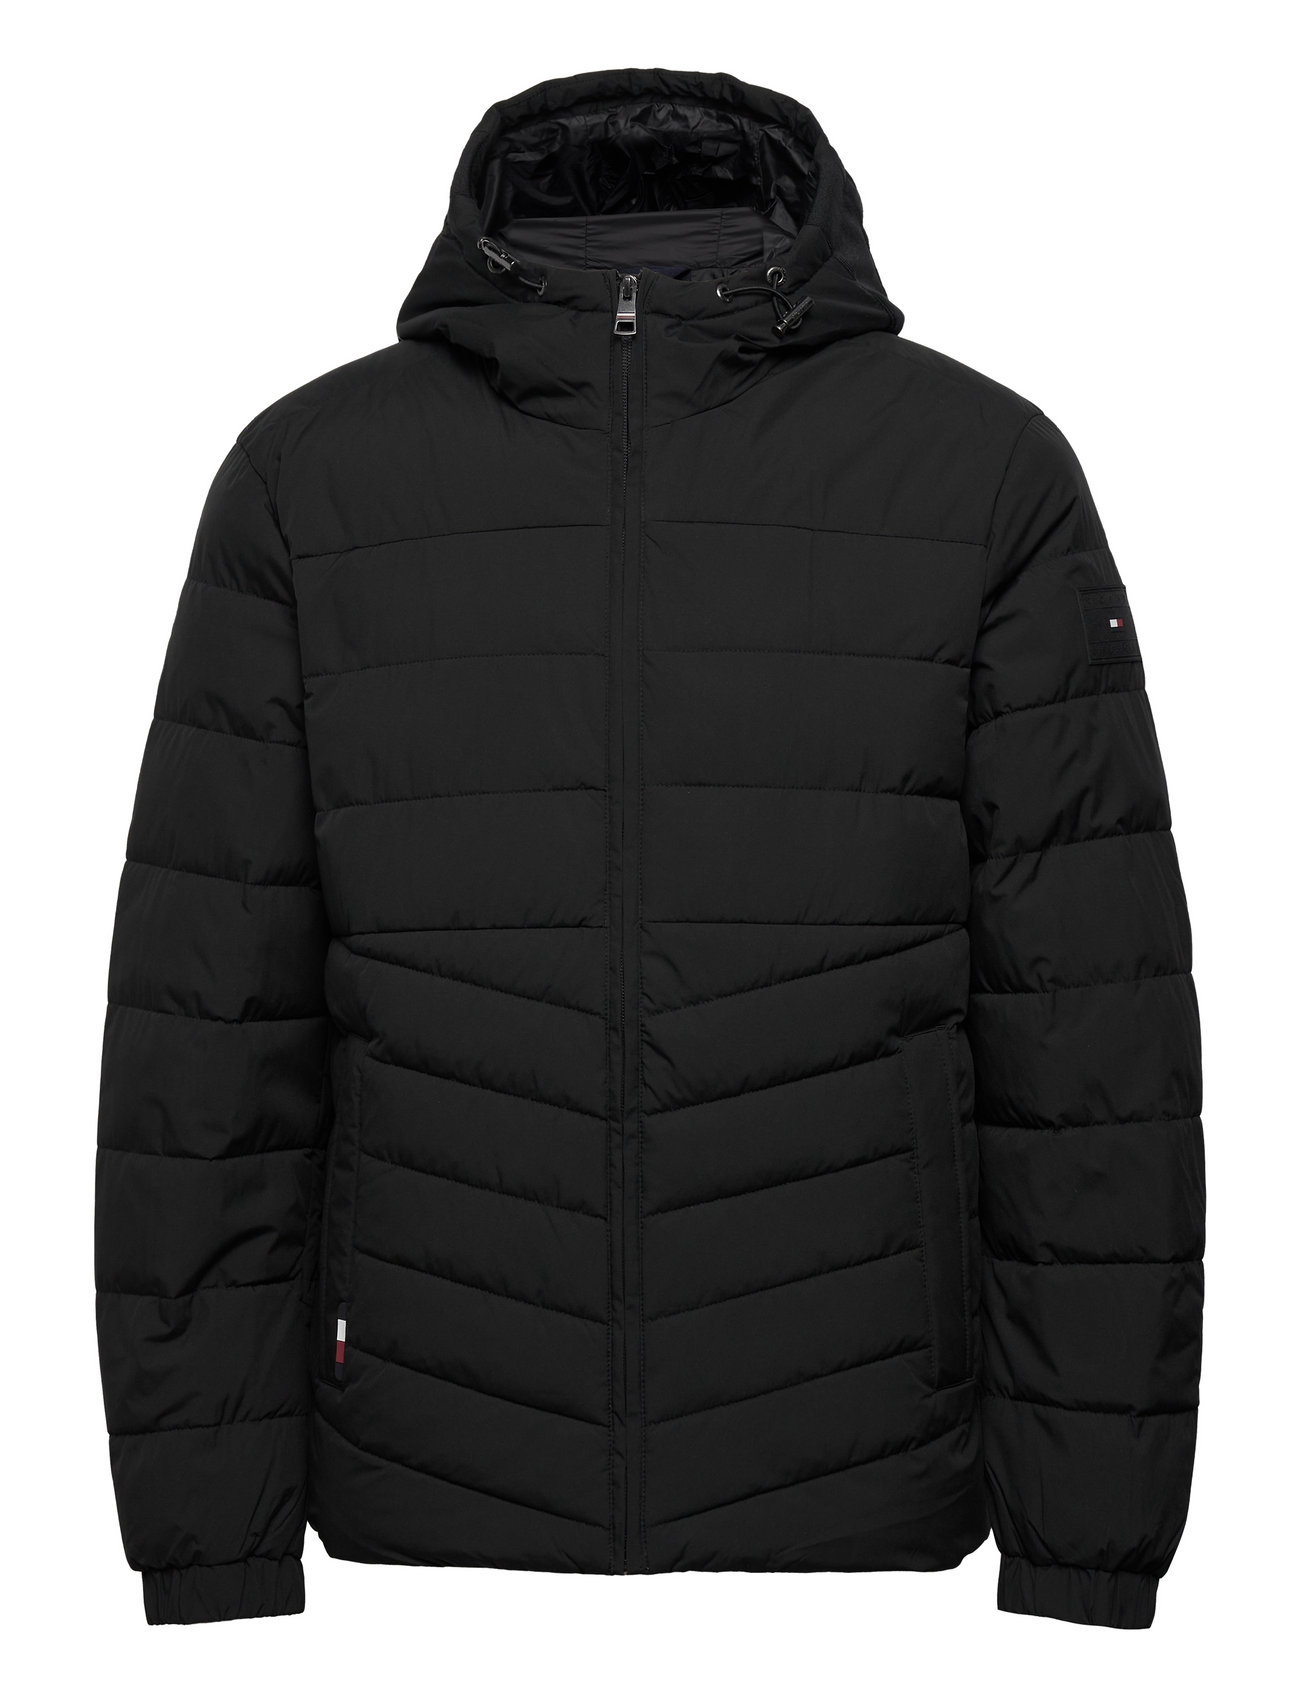 Tommy Hilfiger Branded Hooded Jacket - 1149 kr. Køb Forede jakker fra Tommy Hilfiger online Boozt.com. Hurtig & nem retur